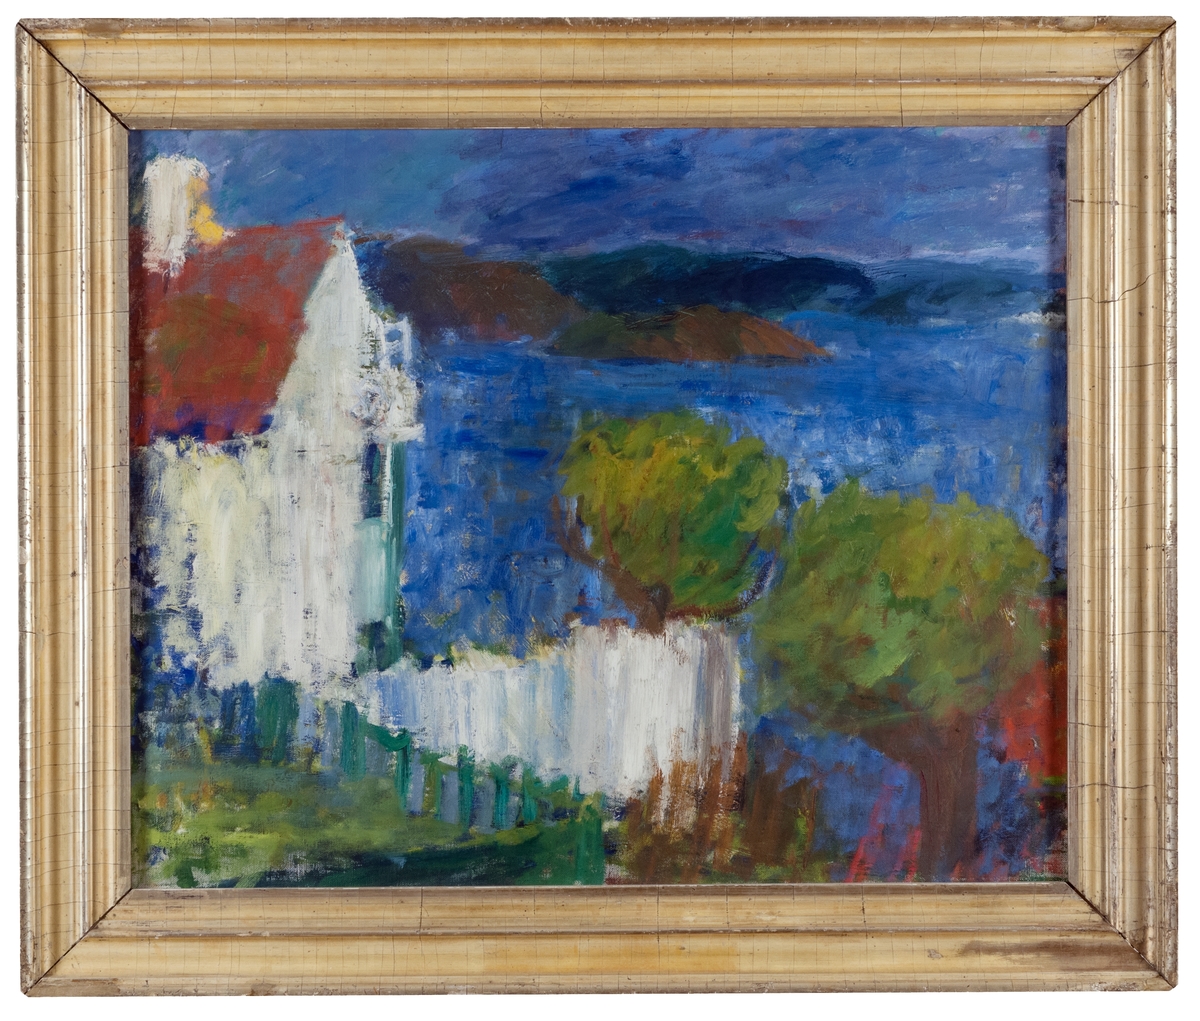 Oljemålning, "Vit gavel, Bohuslän" av Karin Parrow. Bohusländsk kustbild, vitt hus med rött tak t.v., vatten, klippor. t.h., ett par träd i förgrunden t.h.